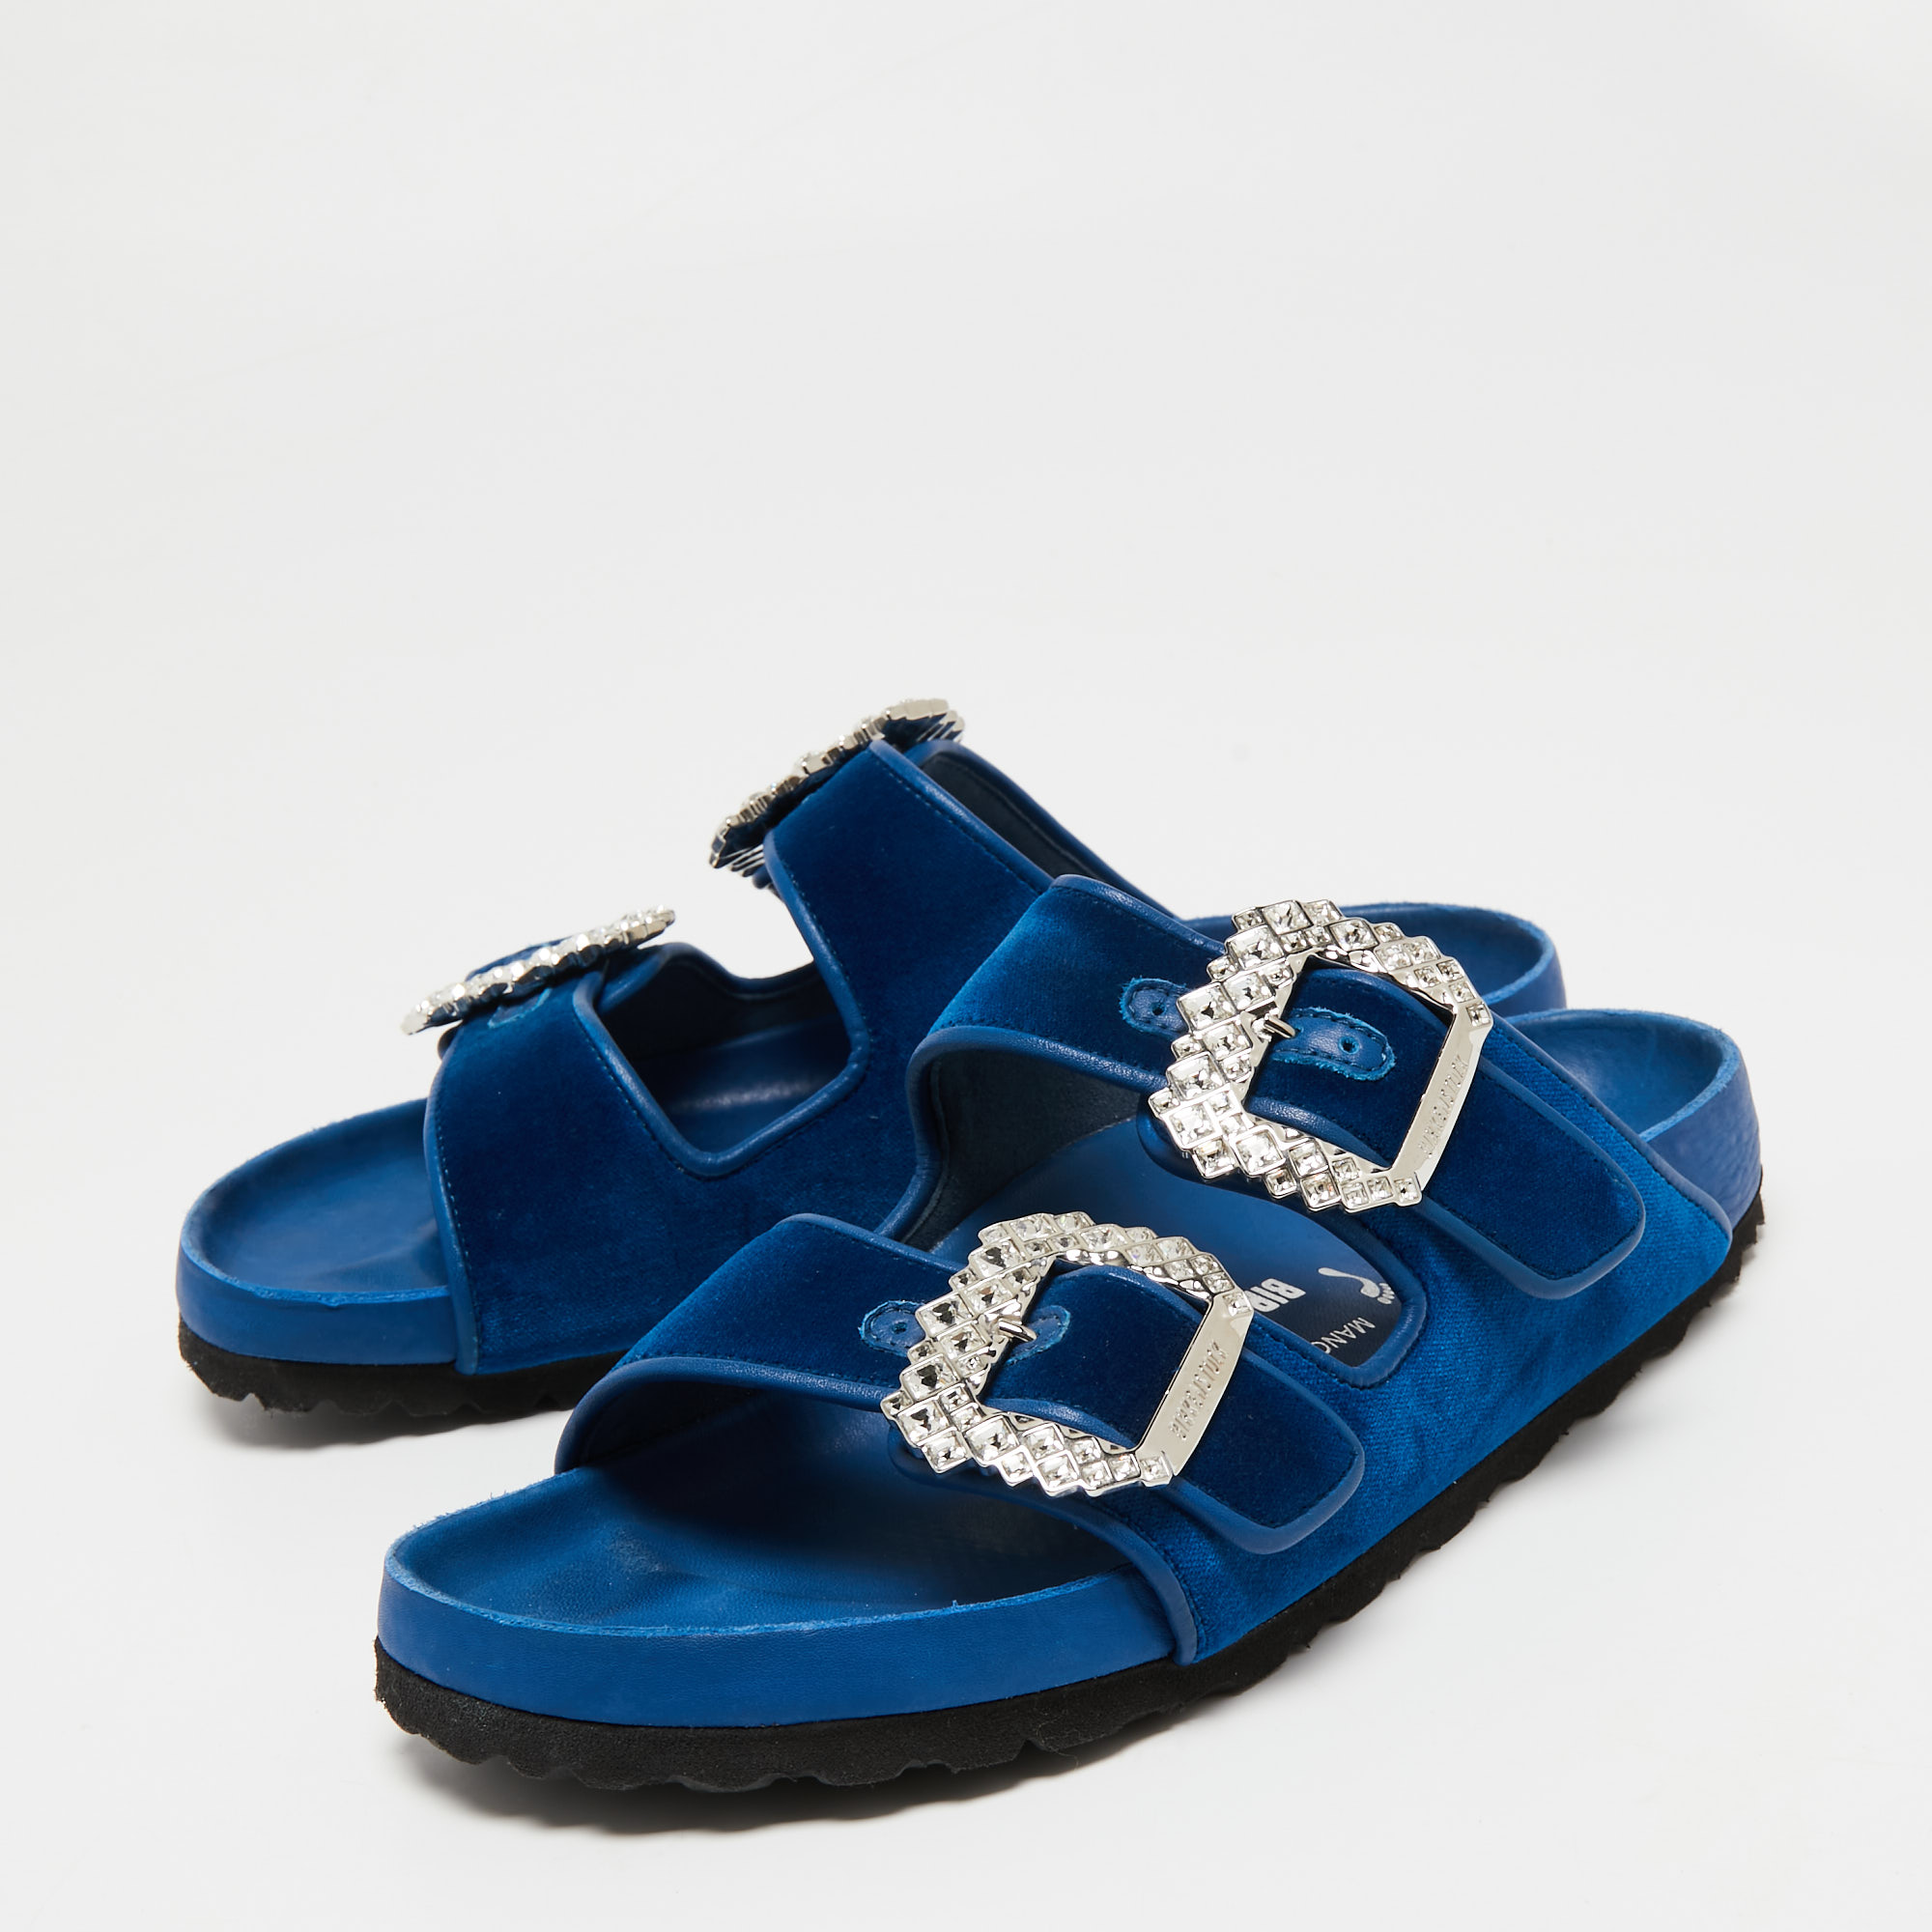 

Birkenstock X Manolo Blahnik Blue Velvet Crystal Embellishments Slides Size